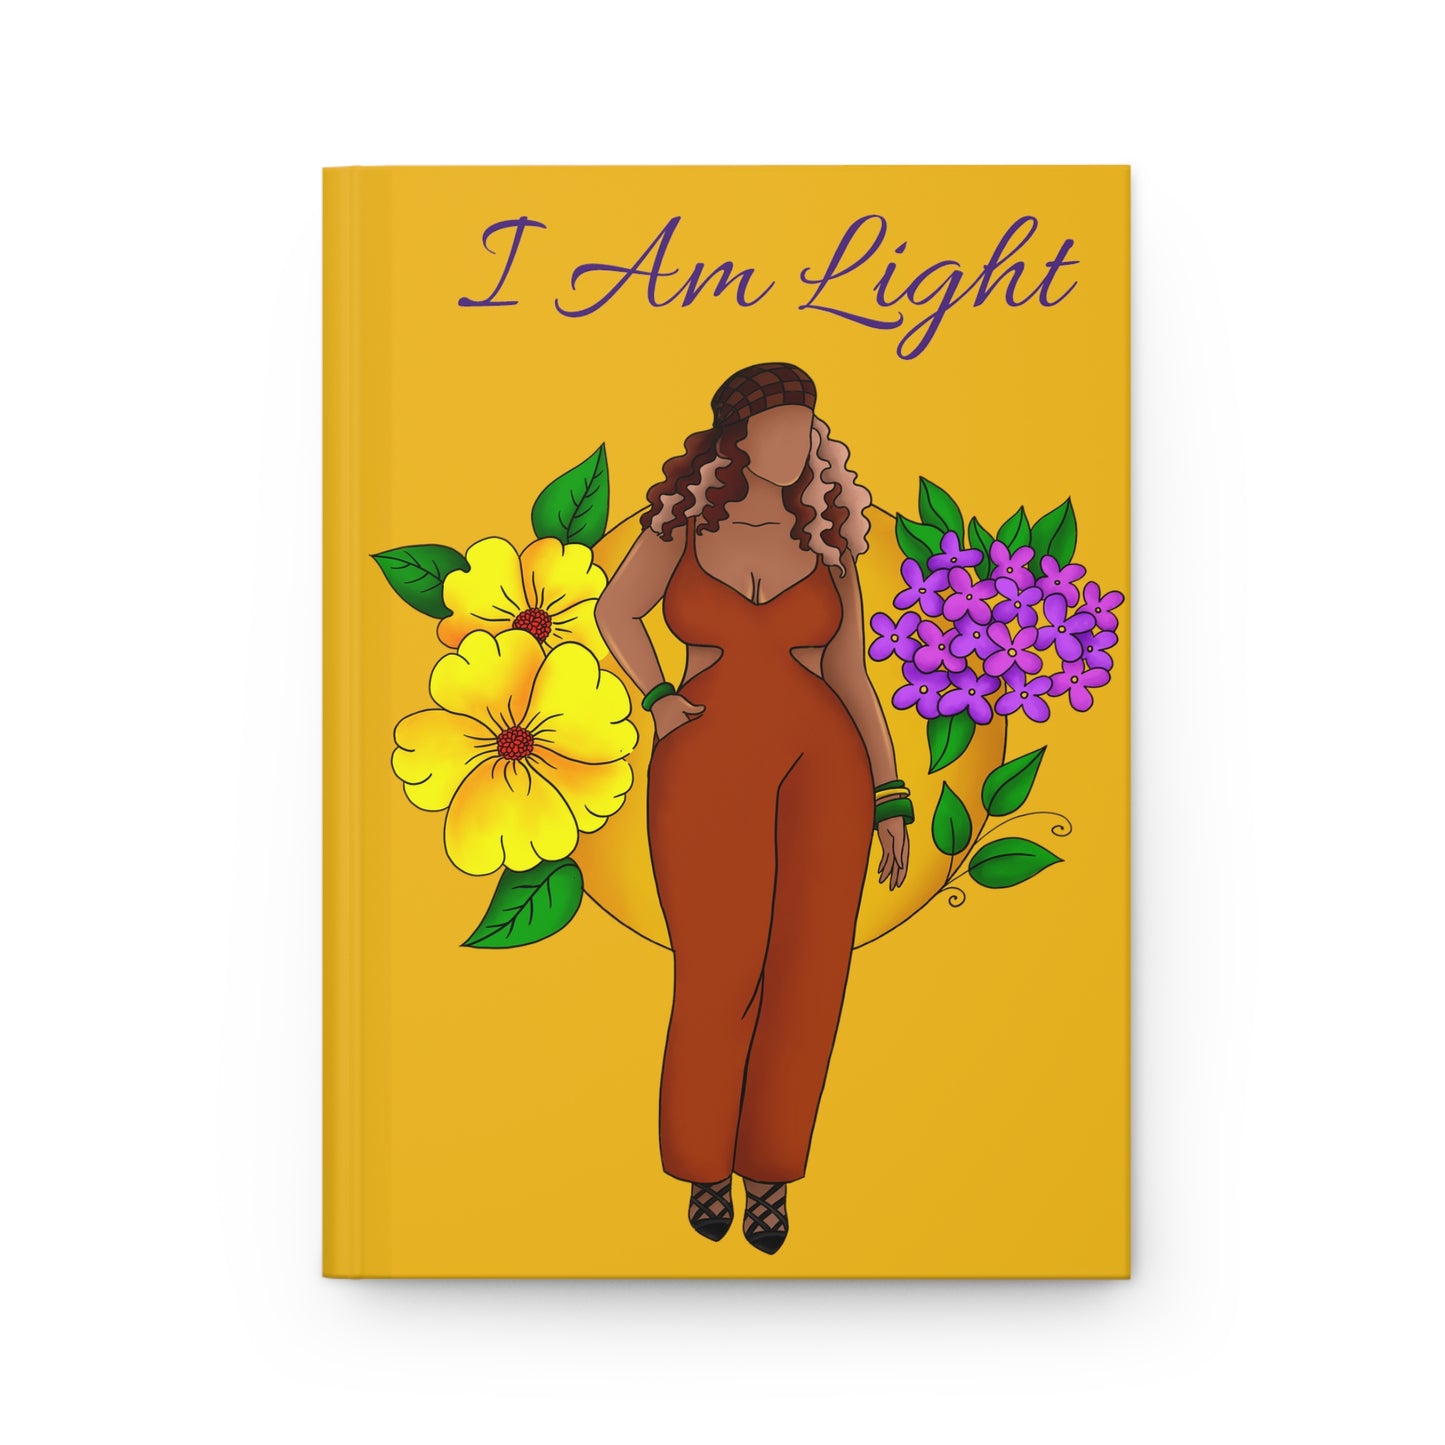 I Am Light Journal